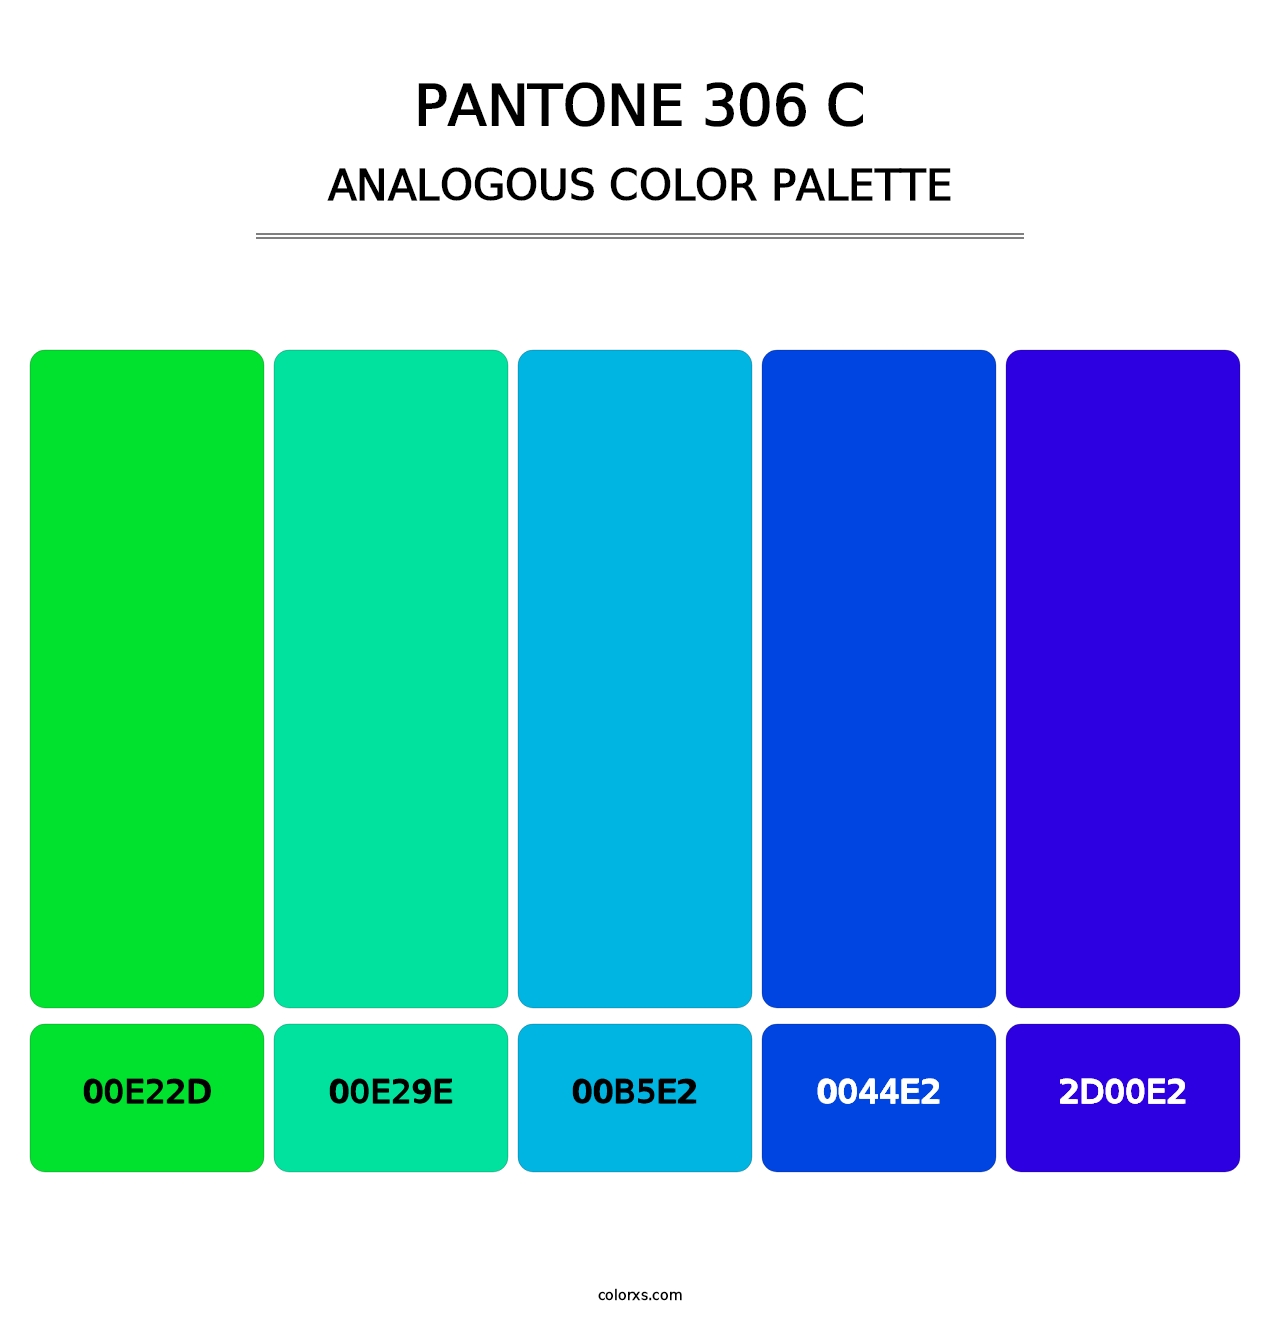 PANTONE 306 C - Analogous Color Palette